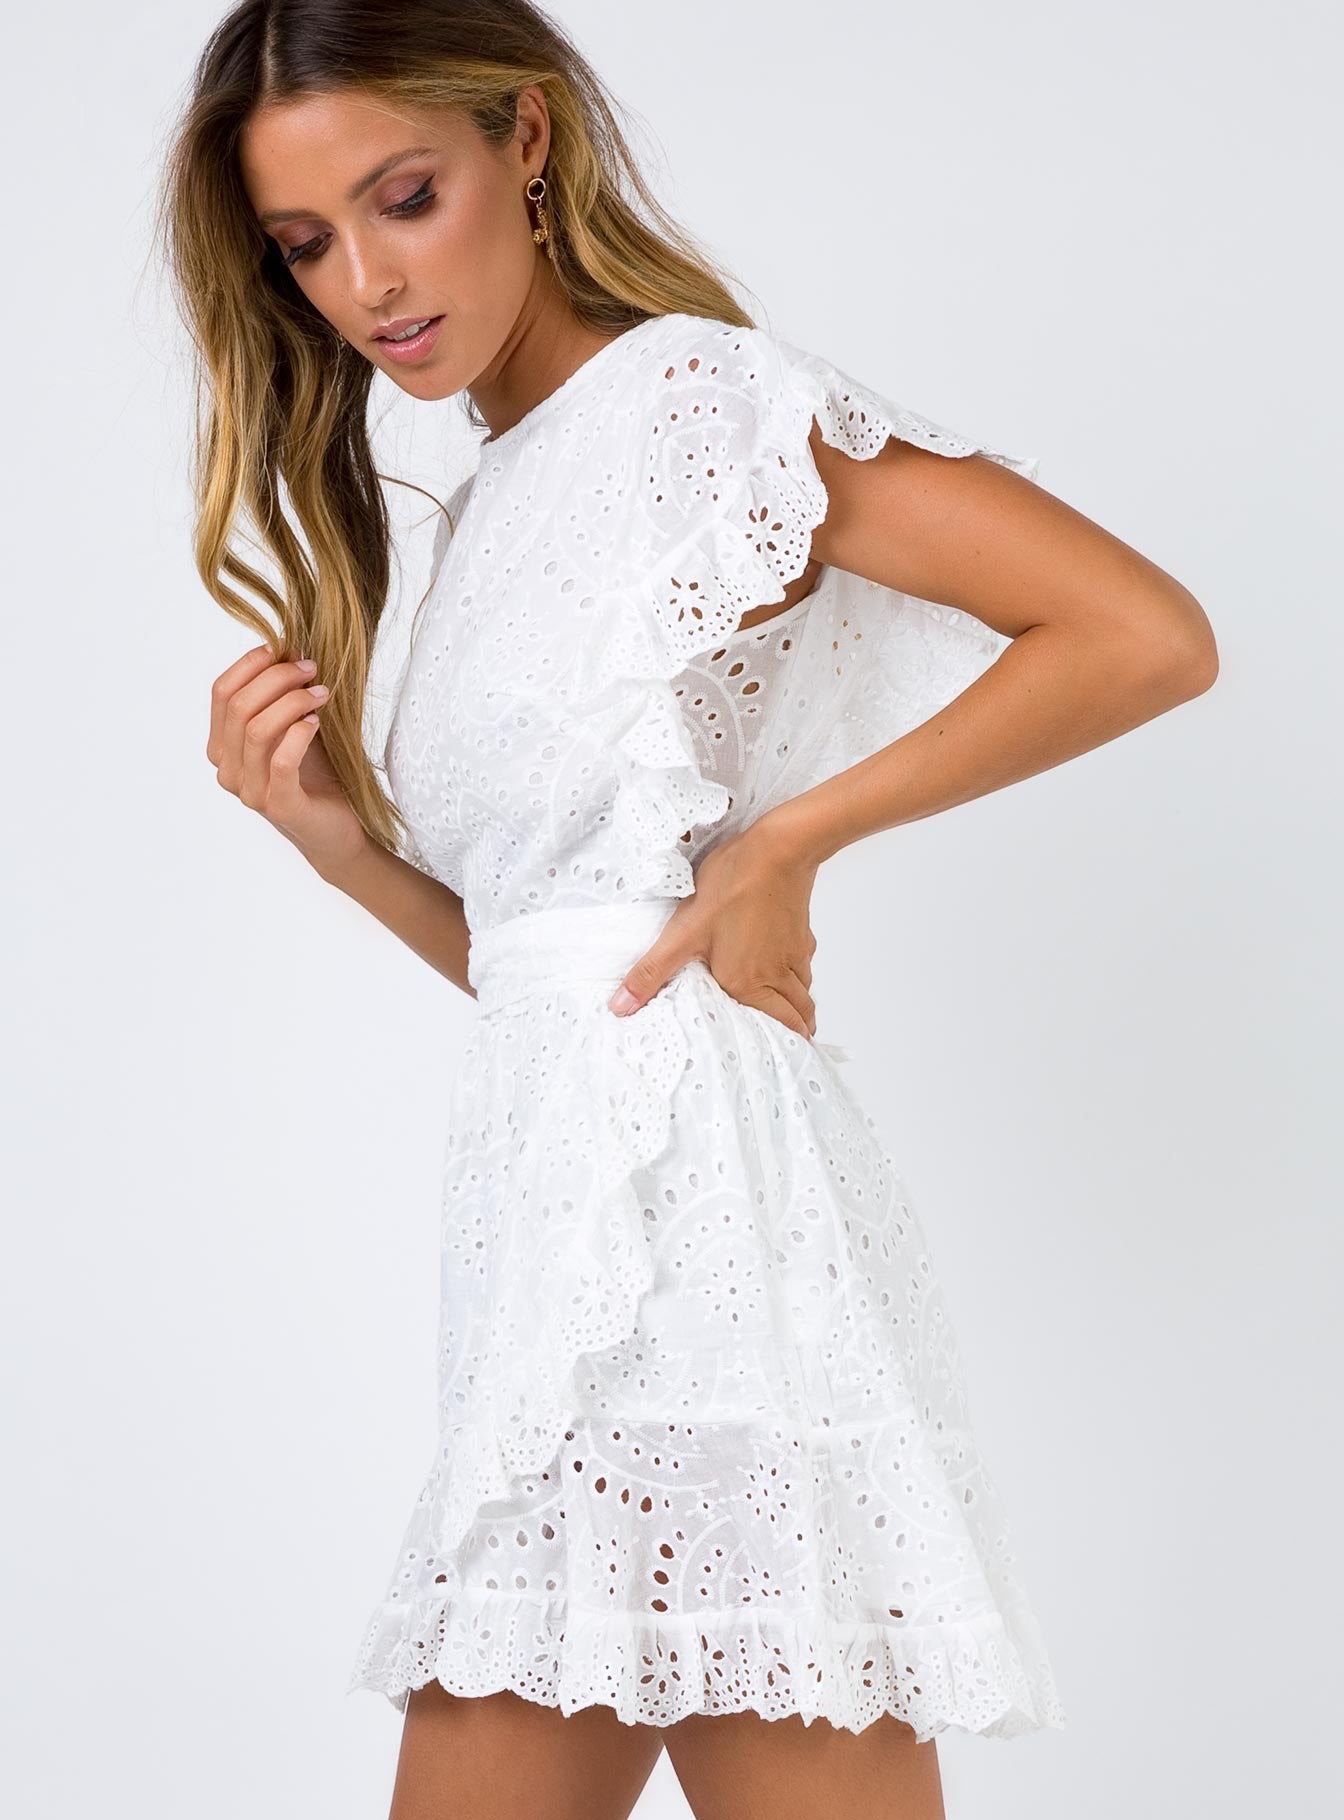 princess polly white lace dress